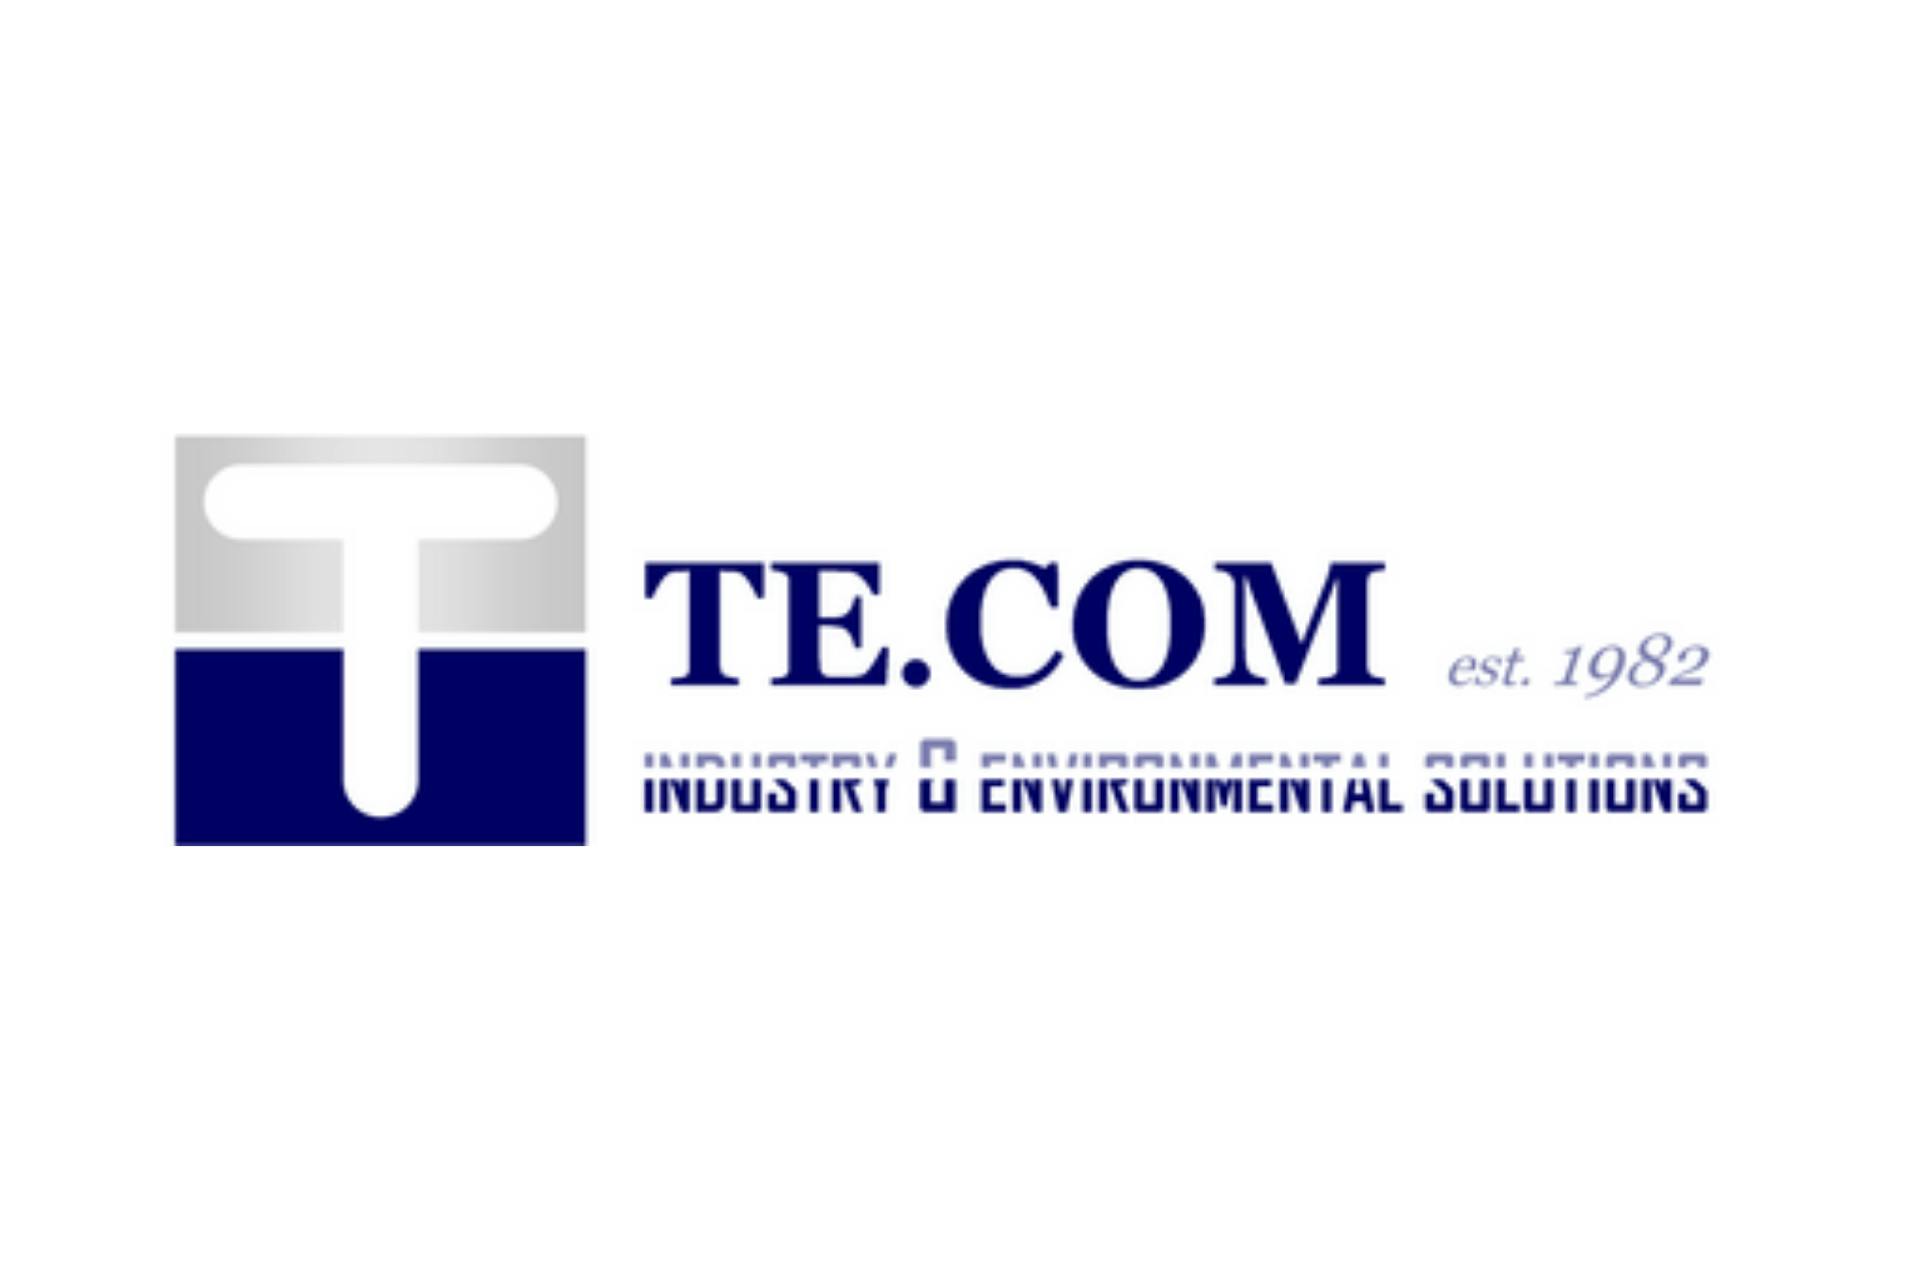 Te.com, Turin